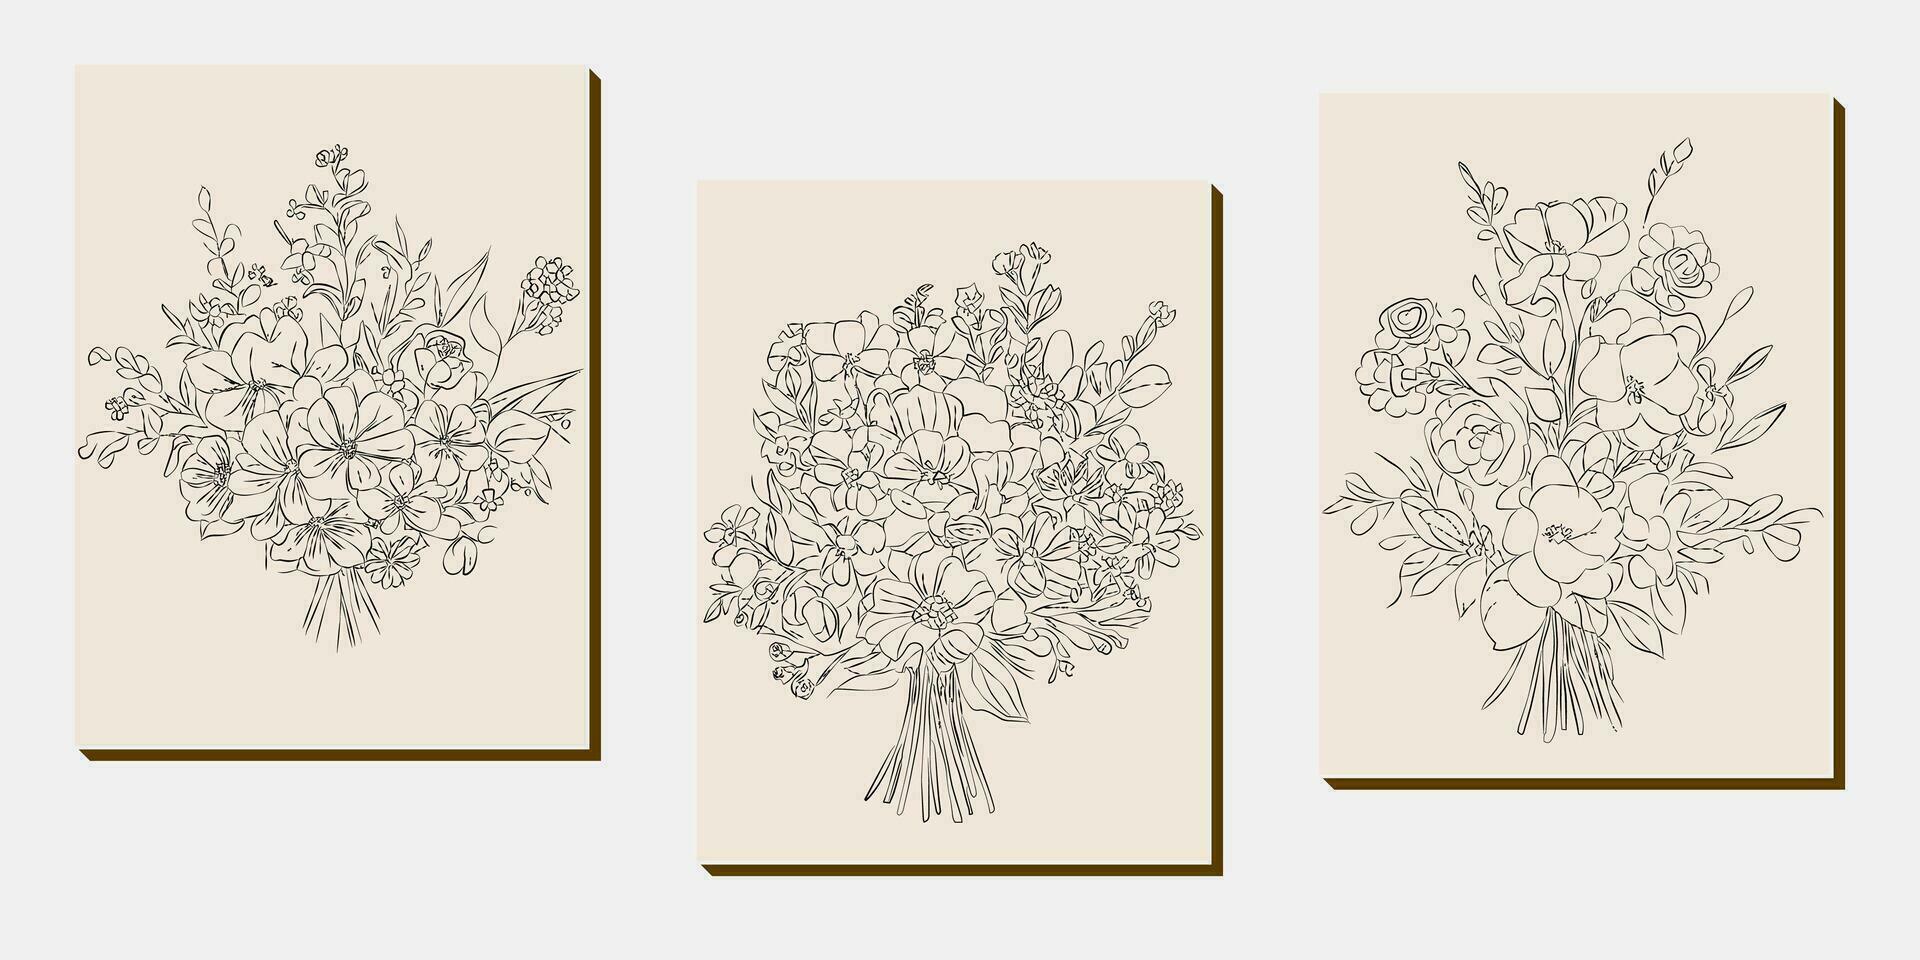 blomma bukett linje konst, svart och vit blommig uppsättning samling bunt ritad för hand, gren, lövverk, blad minimal antik retro samtida bläck teckning för dekor bröllop inbjudan och affisch kort vektor